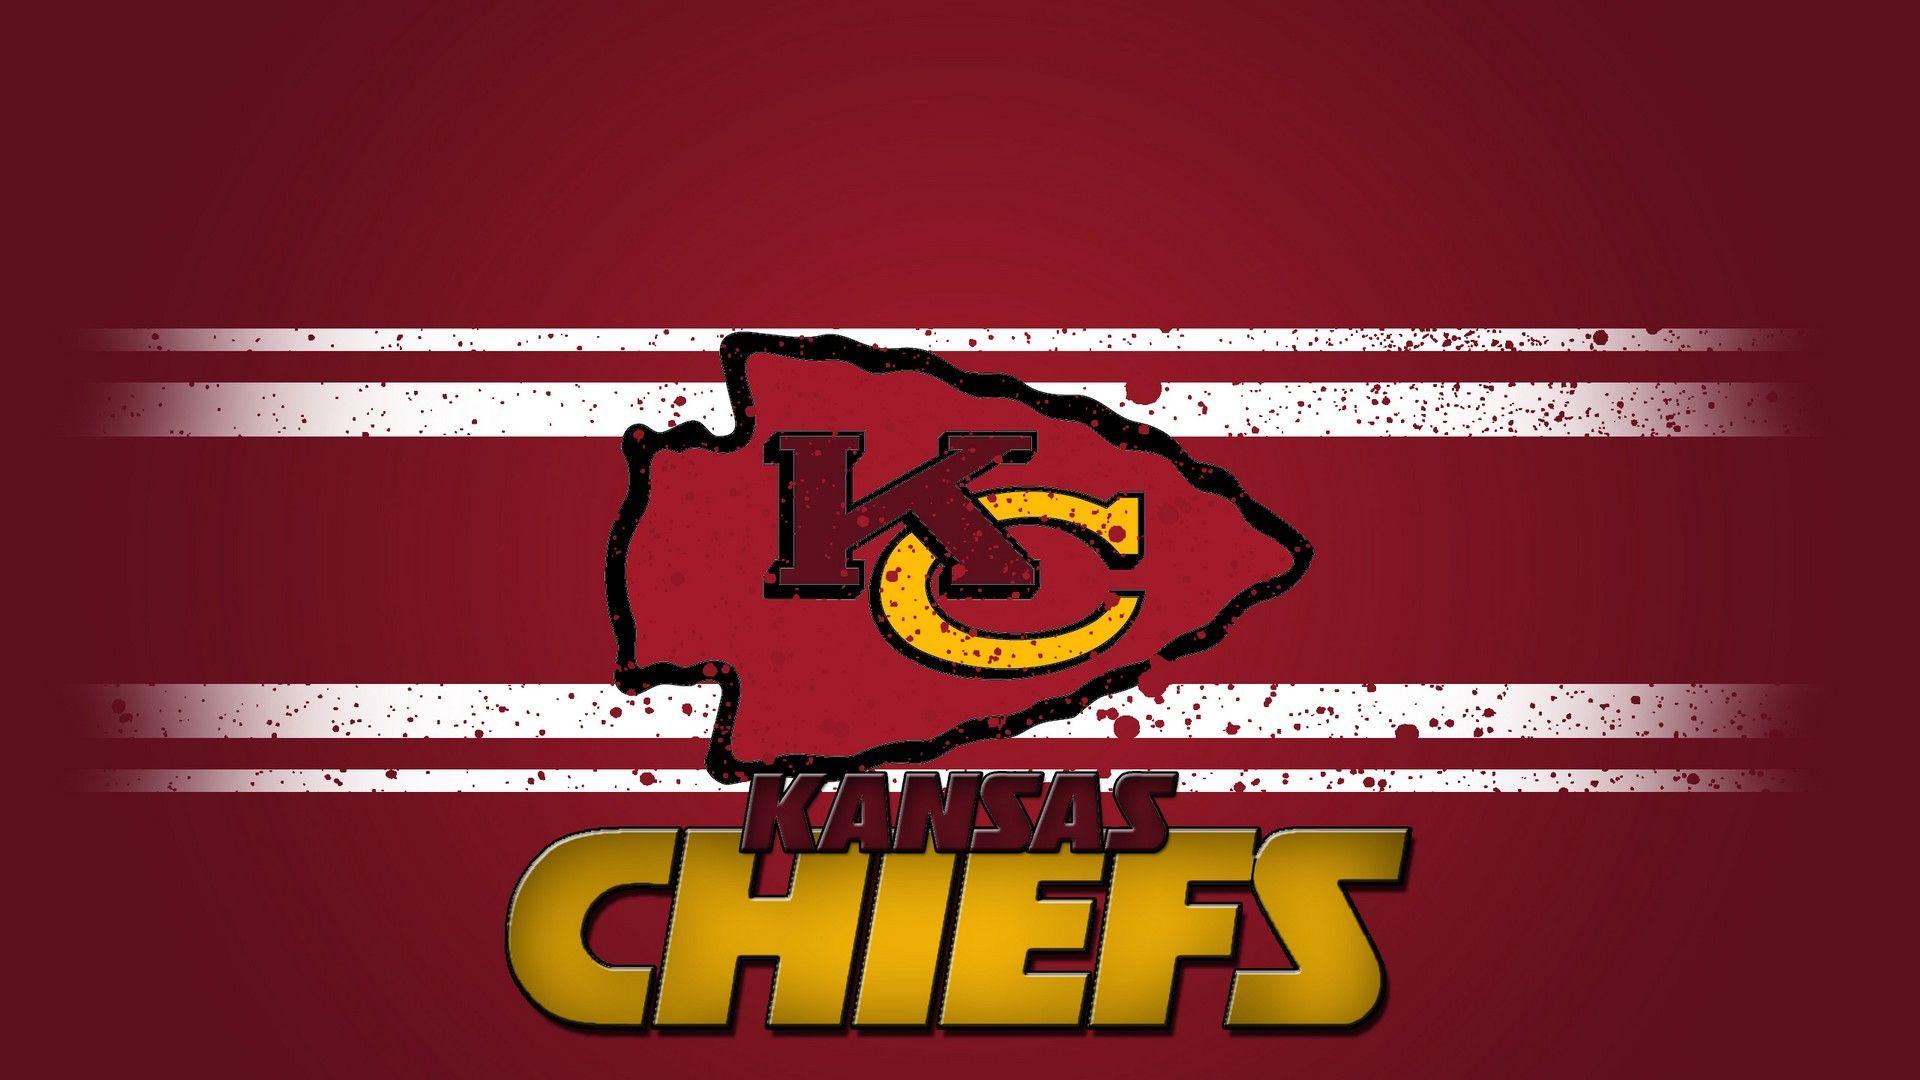 HD Desktop Wallpaper Kansas City Chiefs NFL Football Wallpaper